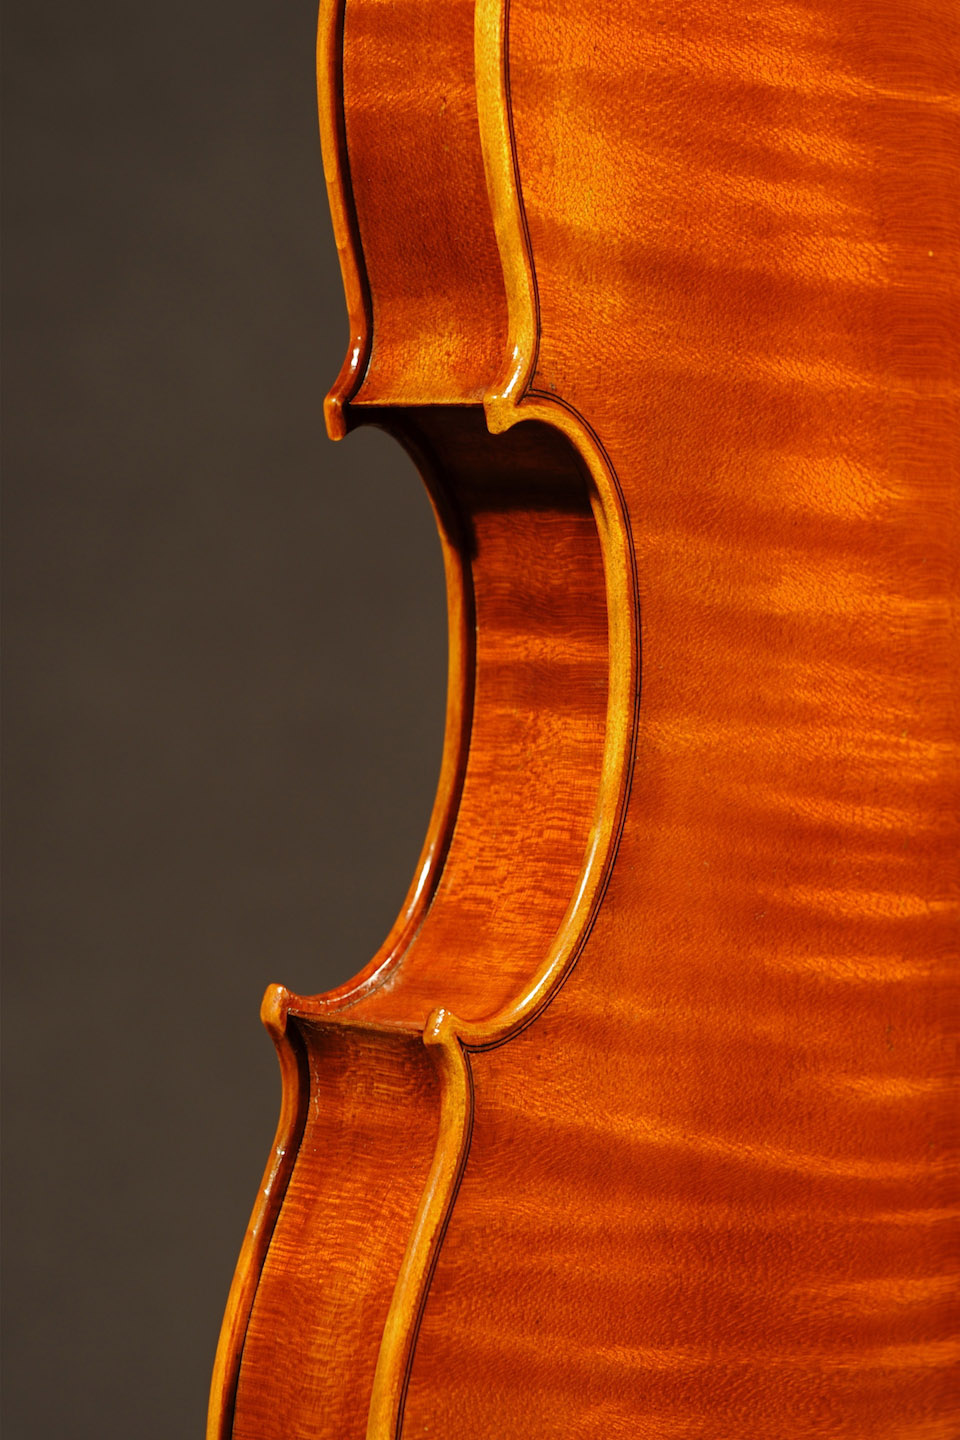 Rabut Violin - Guarneri Model